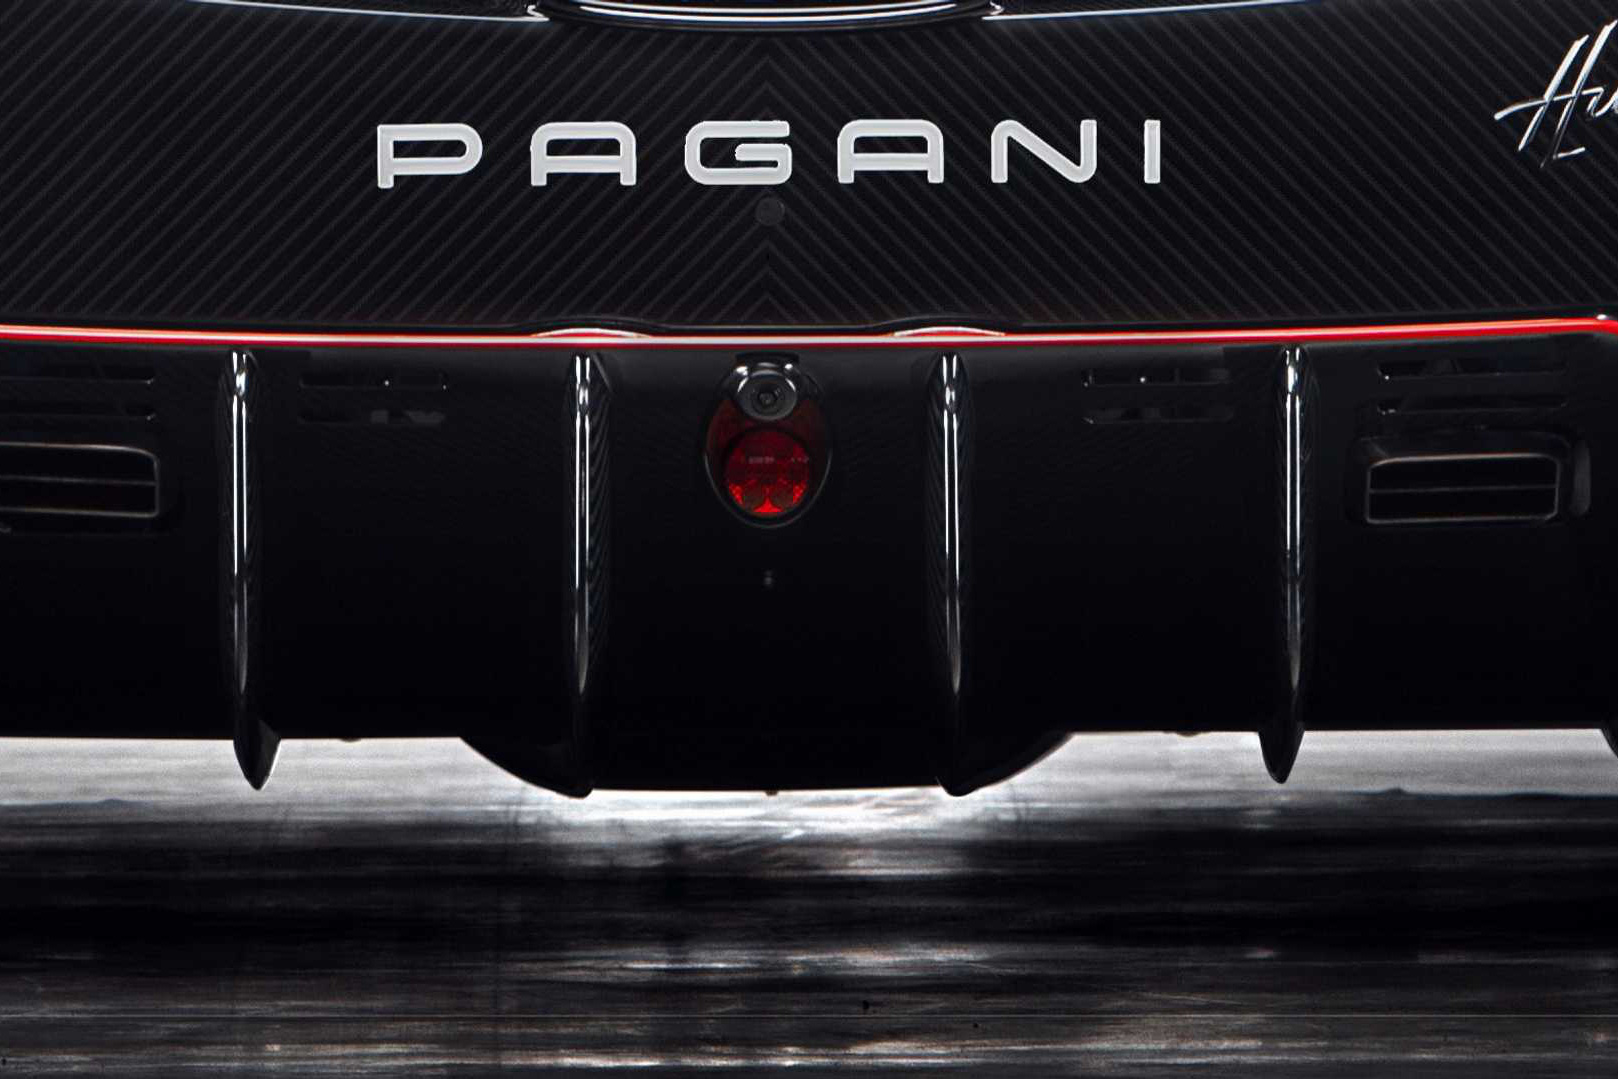 Siêu xe Pagani mới sẽ chào sân vào 2022, liệu đại gia Minh Nhựa có hứng thú?